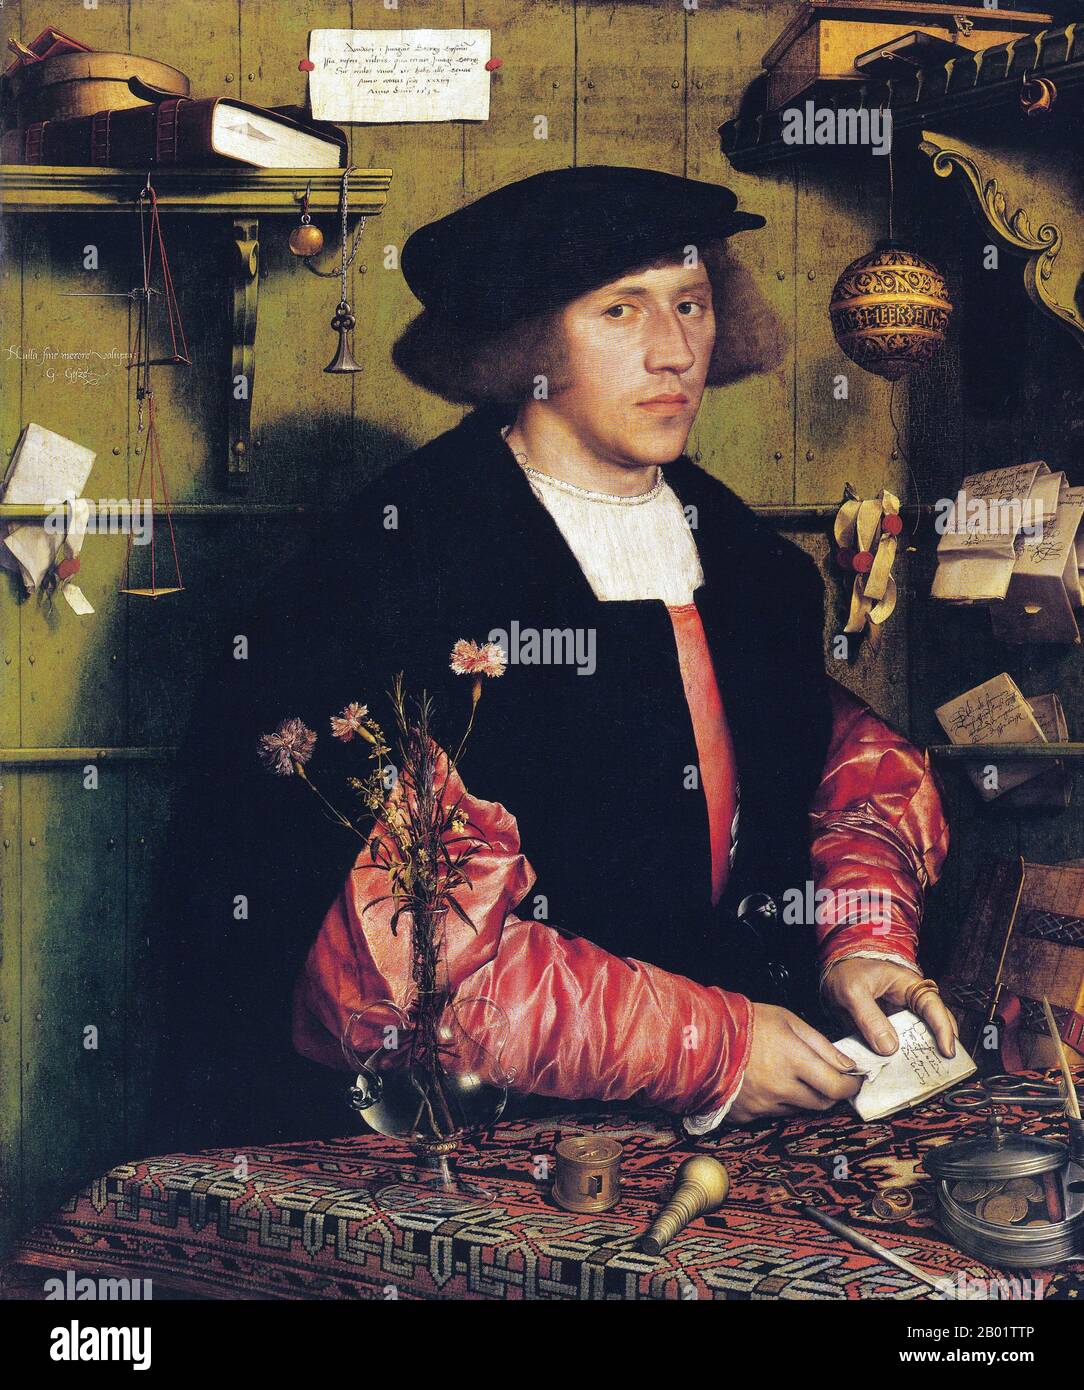 Allemagne : 'le marchand Georg Gisze'. Huile sur bois peinture de Hans Holbein le jeune (1497-1543), v. 1532. Hans Holbein le jeune était un peintre et graveur germano-suisse du style Renaissance du Nord, considéré par beaucoup comme l'un des plus grands portraitistes du XVIe siècle. Son éventail de travaux comprenait également la propagande réformiste, l'art religieux et la satire, et il a été un contributeur influent à l'histoire de la conception de livres. Il est également peintre du roi d'Henri VIII d'Angleterre, ses portraits de la famille royale et de la noblesse un important document survivant de la cour d'Angleterre. Banque D'Images